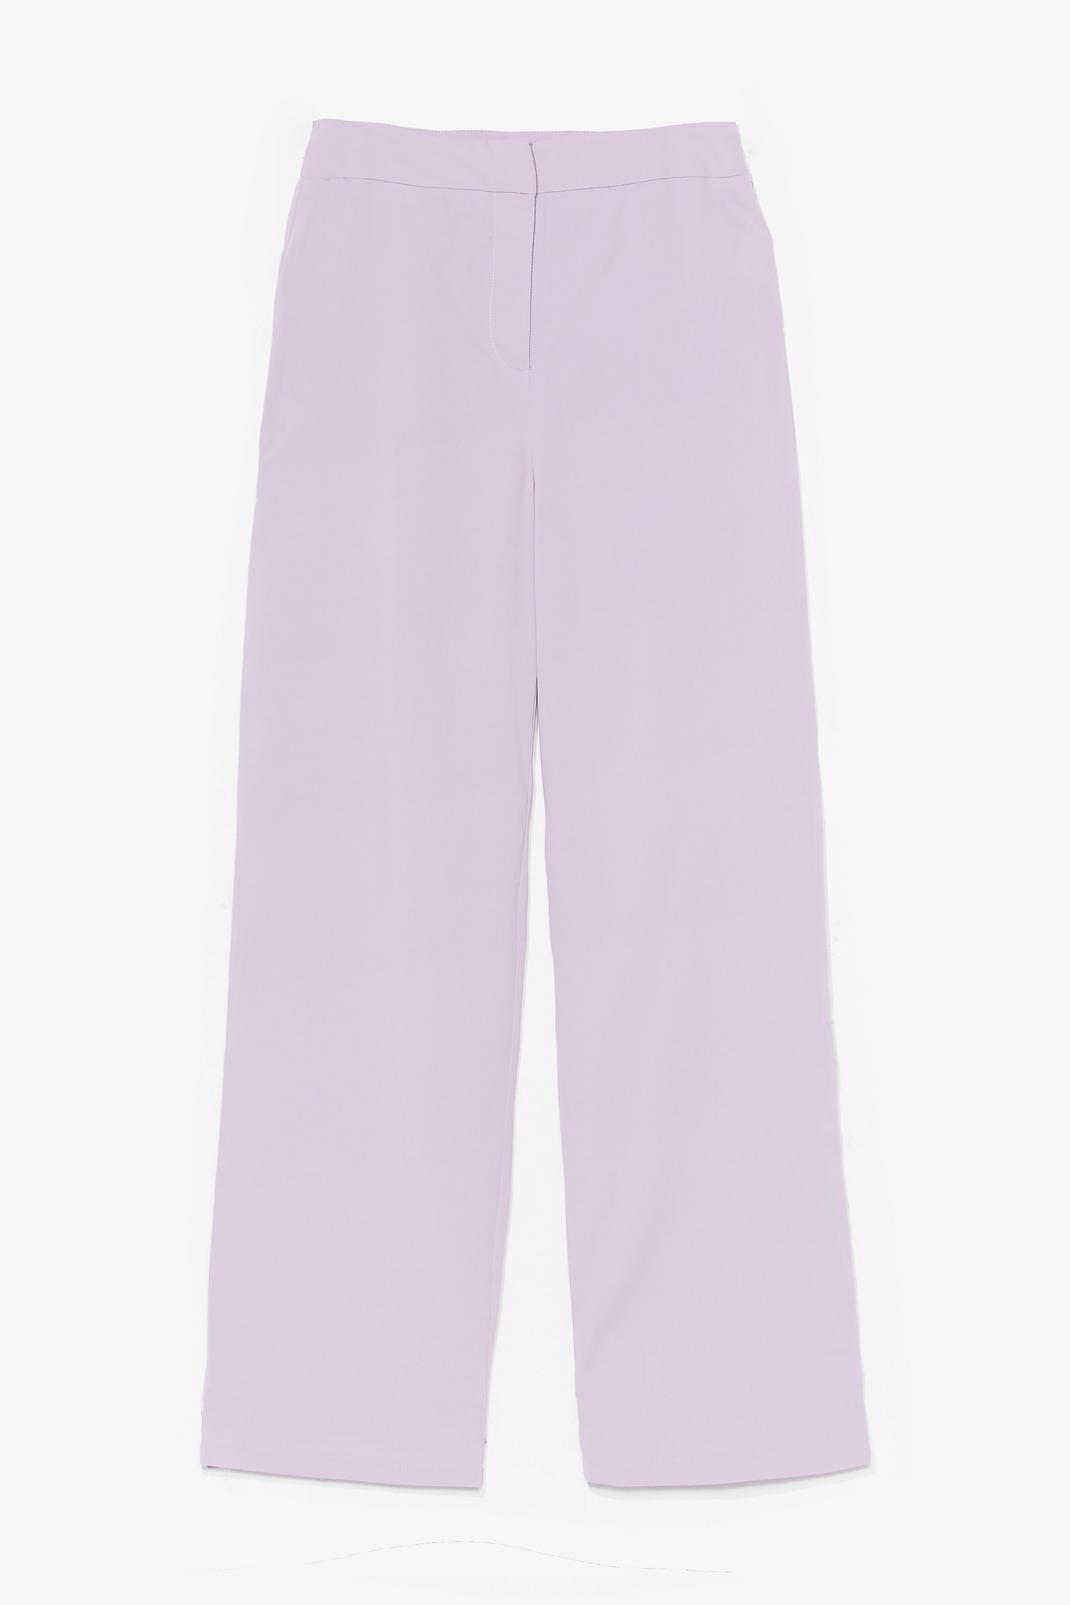 Pantalon droit taille haute, Lilac image number 1